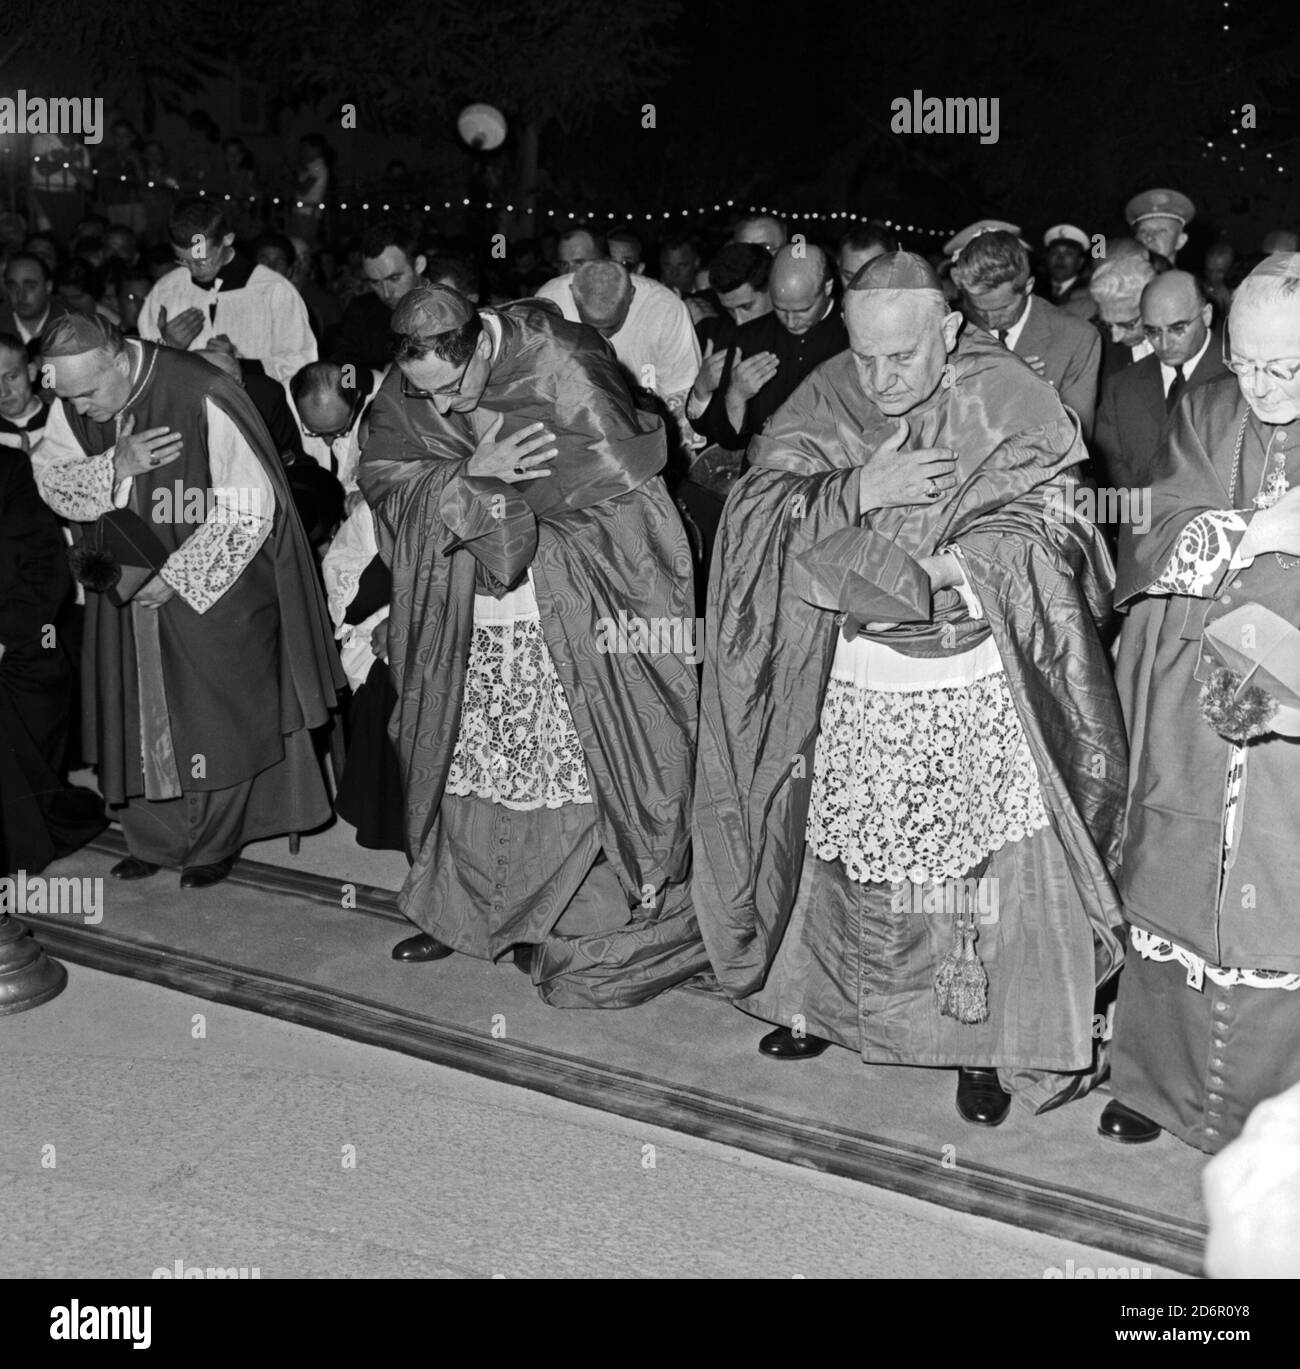 Vie du Pape Jean XXIII. L'archevêque de Gênes Giuseppe Siri, le Patriarche  de Venise Angelo Roncalli et l'évêque de Tortona assistant à la cerimonie de  l'illumination de la Vierge de la statue